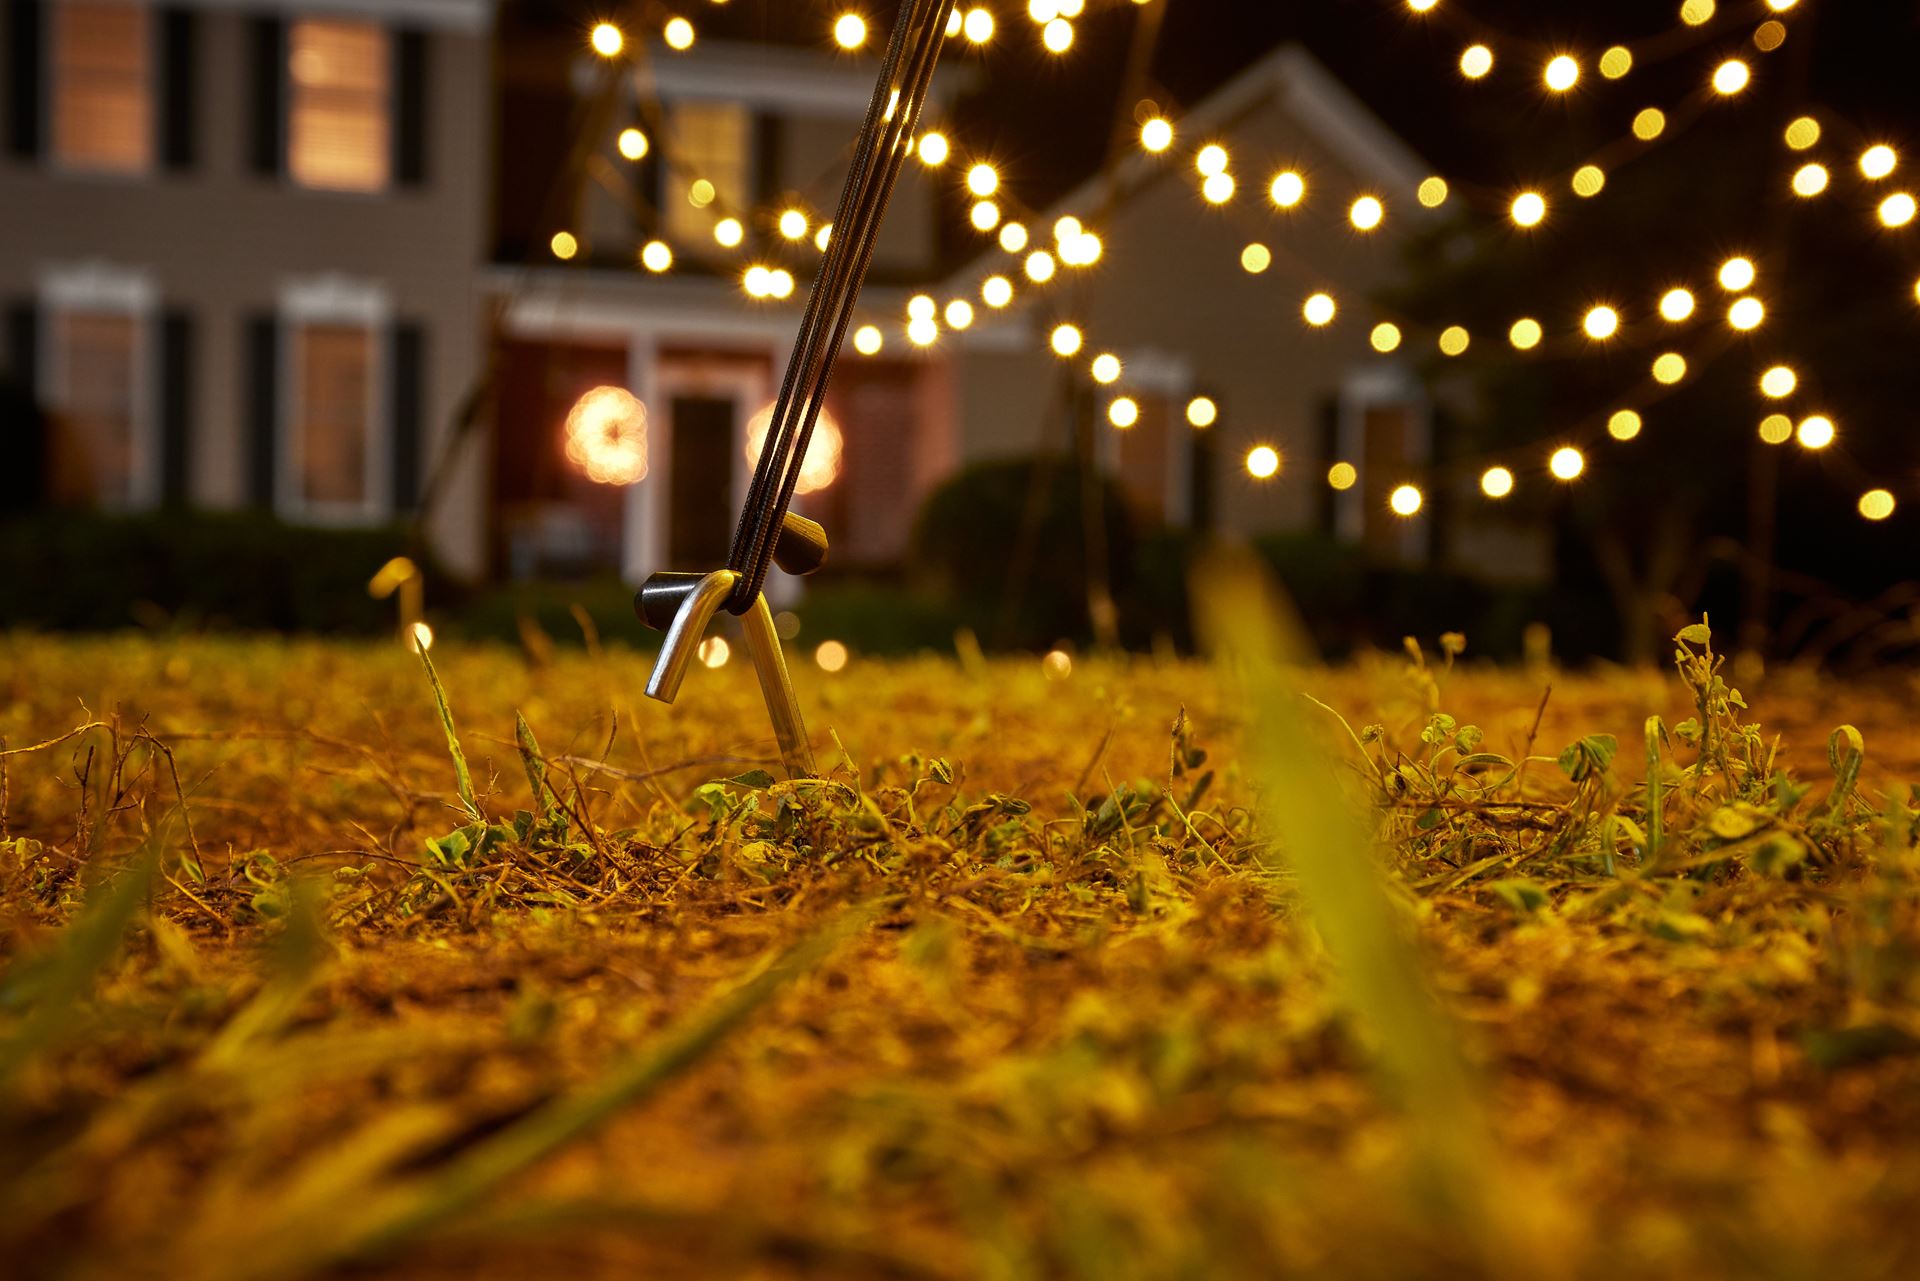 Fairybell-kerstverlichting-kerstboom-8M-hoog-1500-LED-lampjes-in-warmwitte-kleur